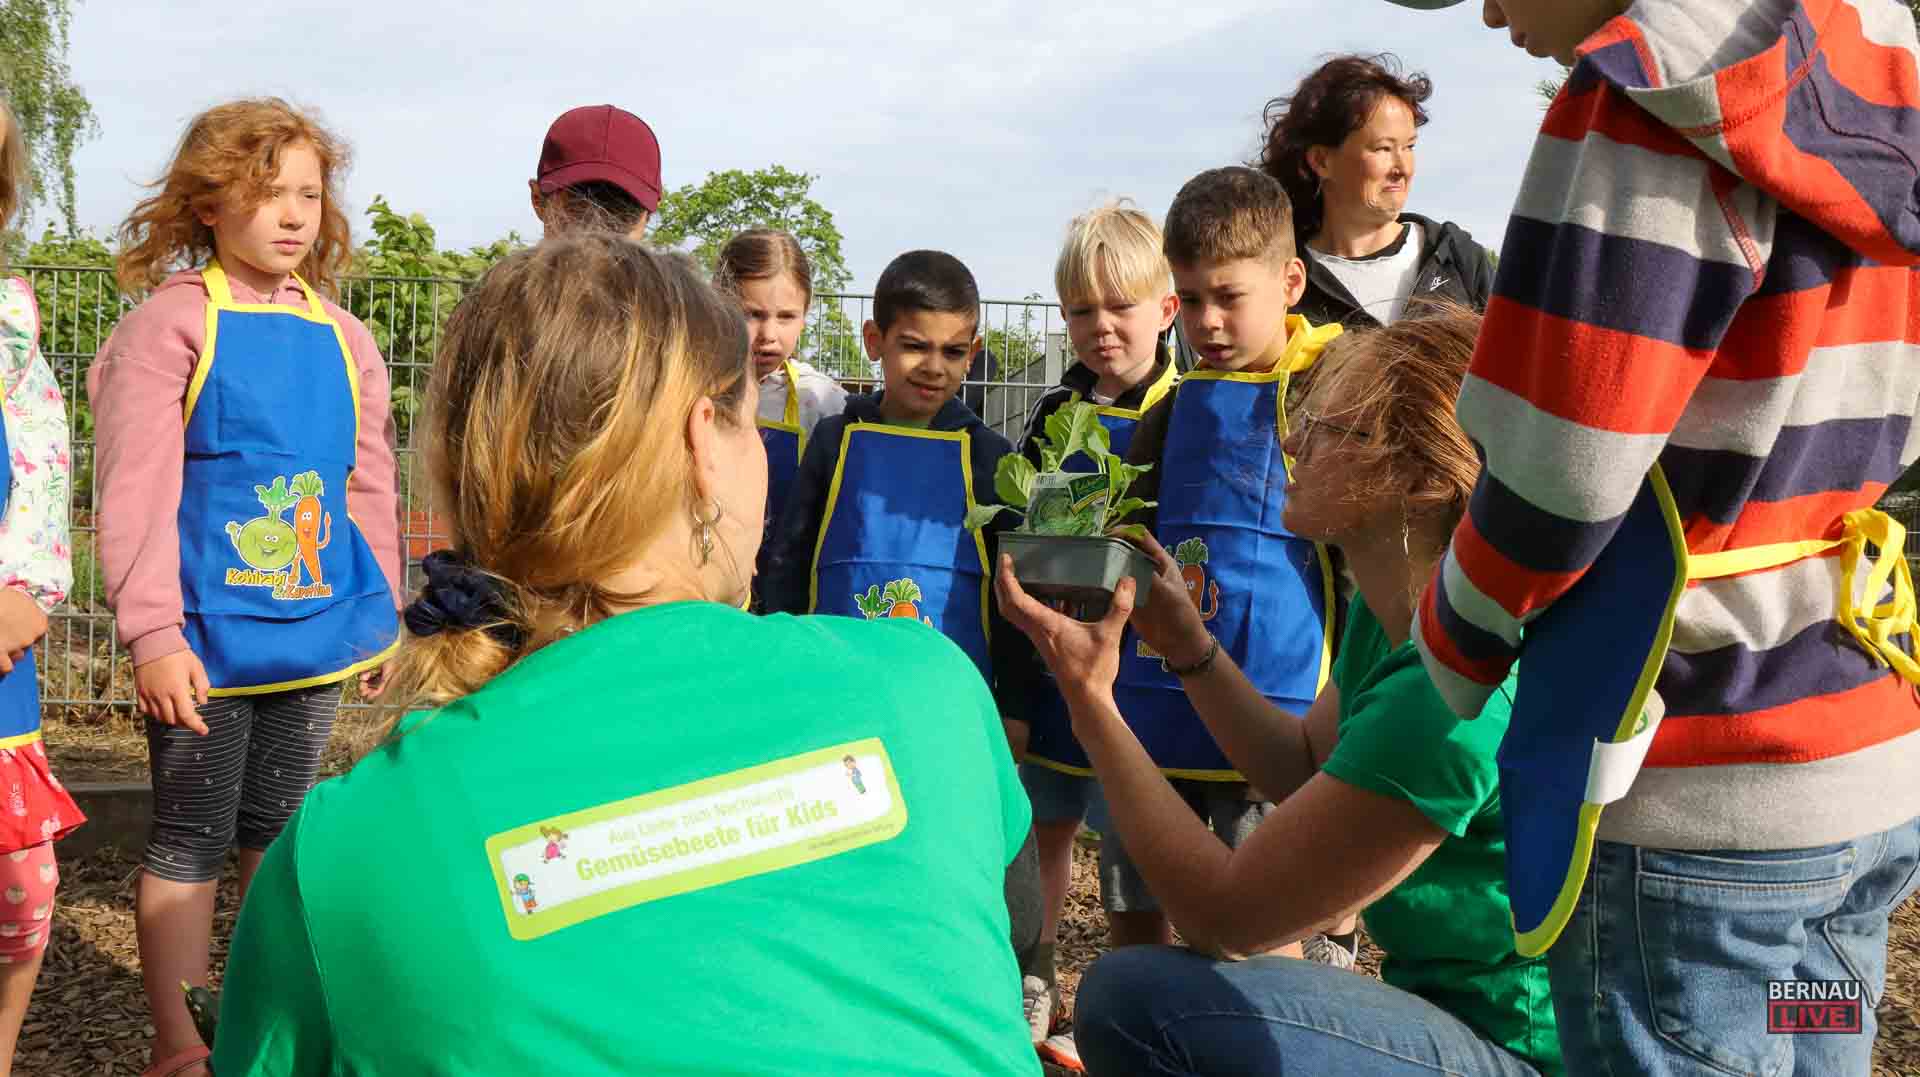 Grundschule am Blumenhag in Bernau - Beete bepflanzen statt Matheunterricht